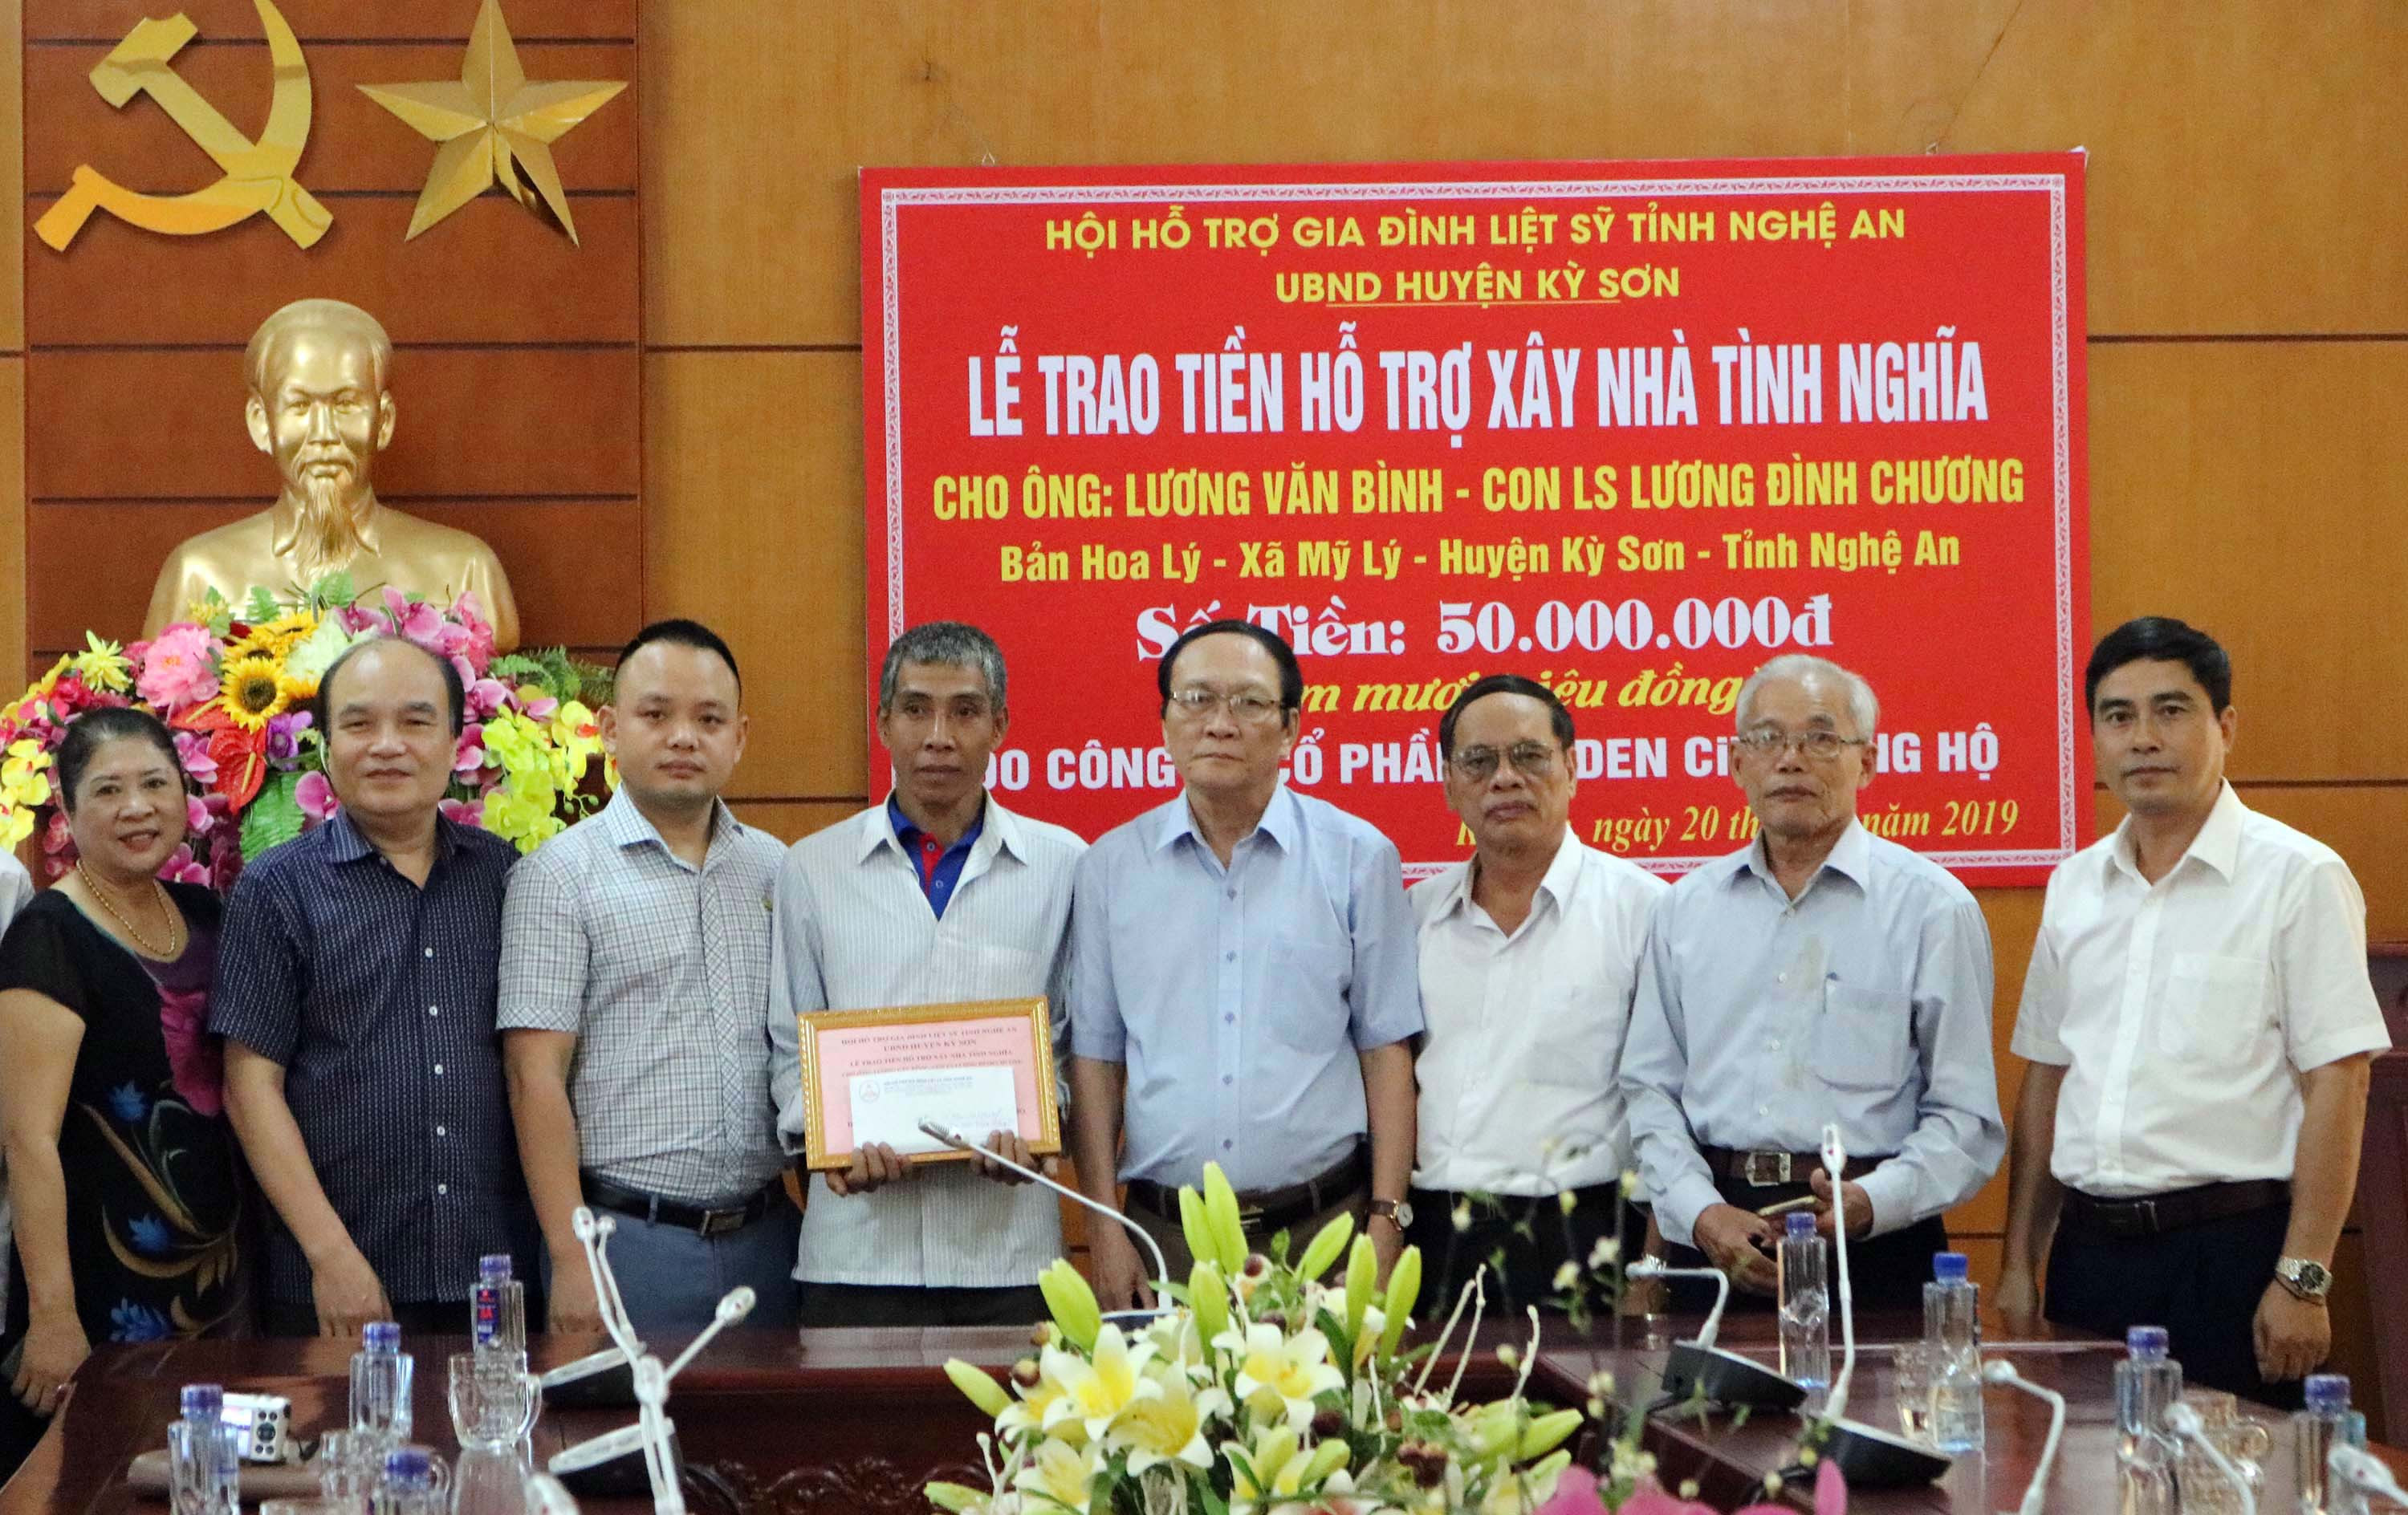 Hội hỗ trợ gia đình liệt sỹ trao số tiền hỗ trợ cho gia đình ông Lương Văn Bình